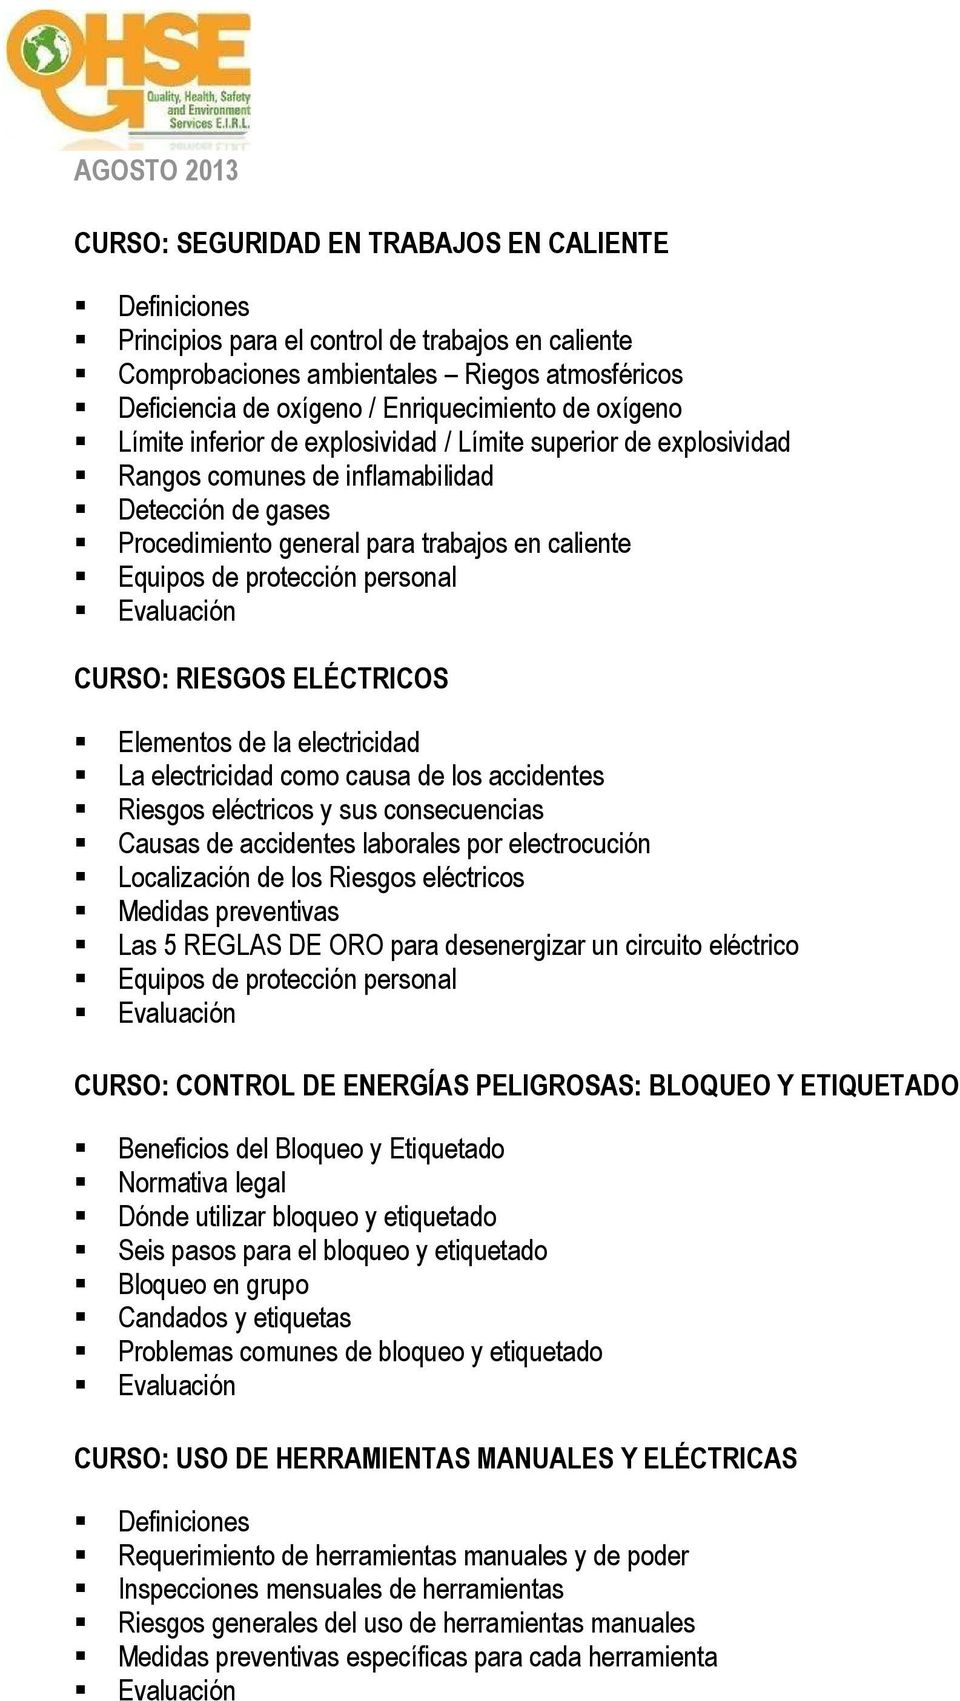 Equipos de protección personal CURSO: RIESGOS ELÉCTRICOS Elementos de la electricidad La electricidad como causa de los accidentes Riesgos eléctricos y sus consecuencias Causas de accidentes